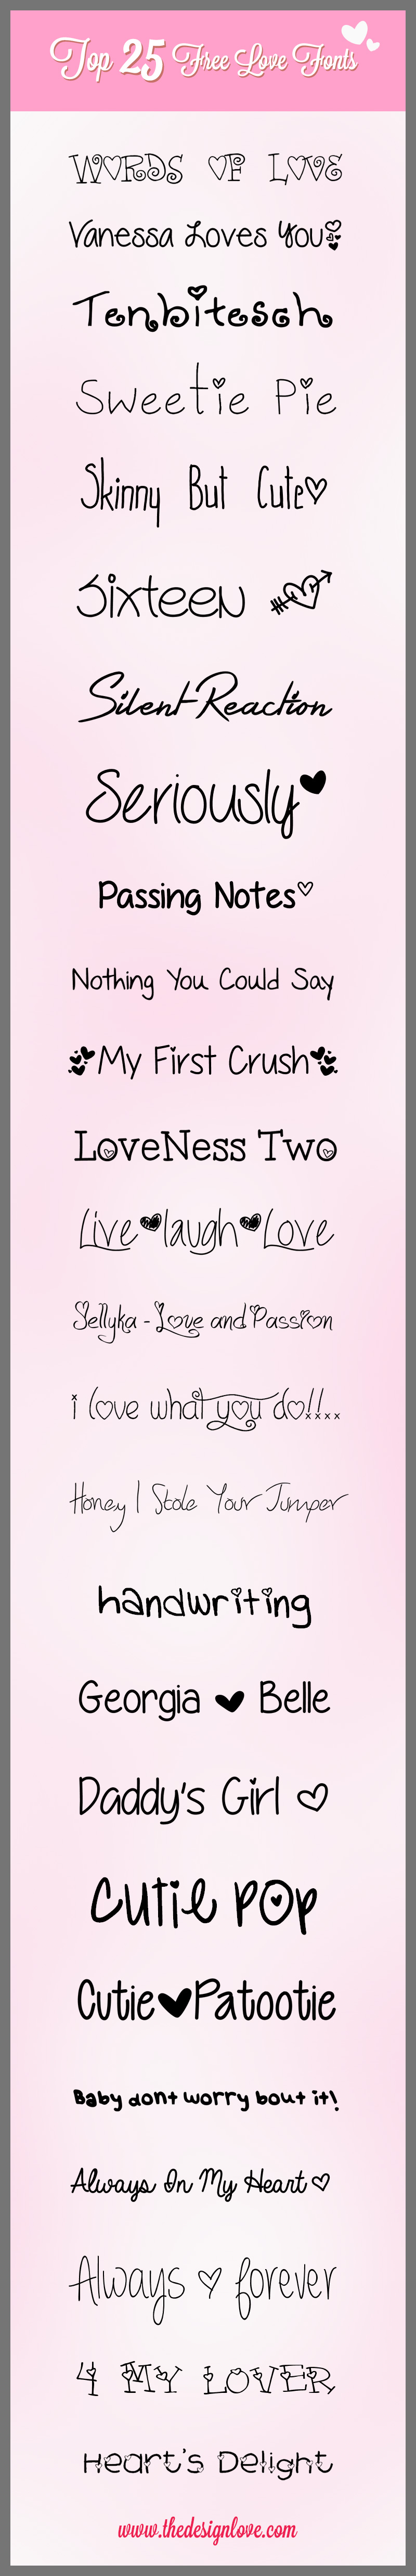 free love fonts